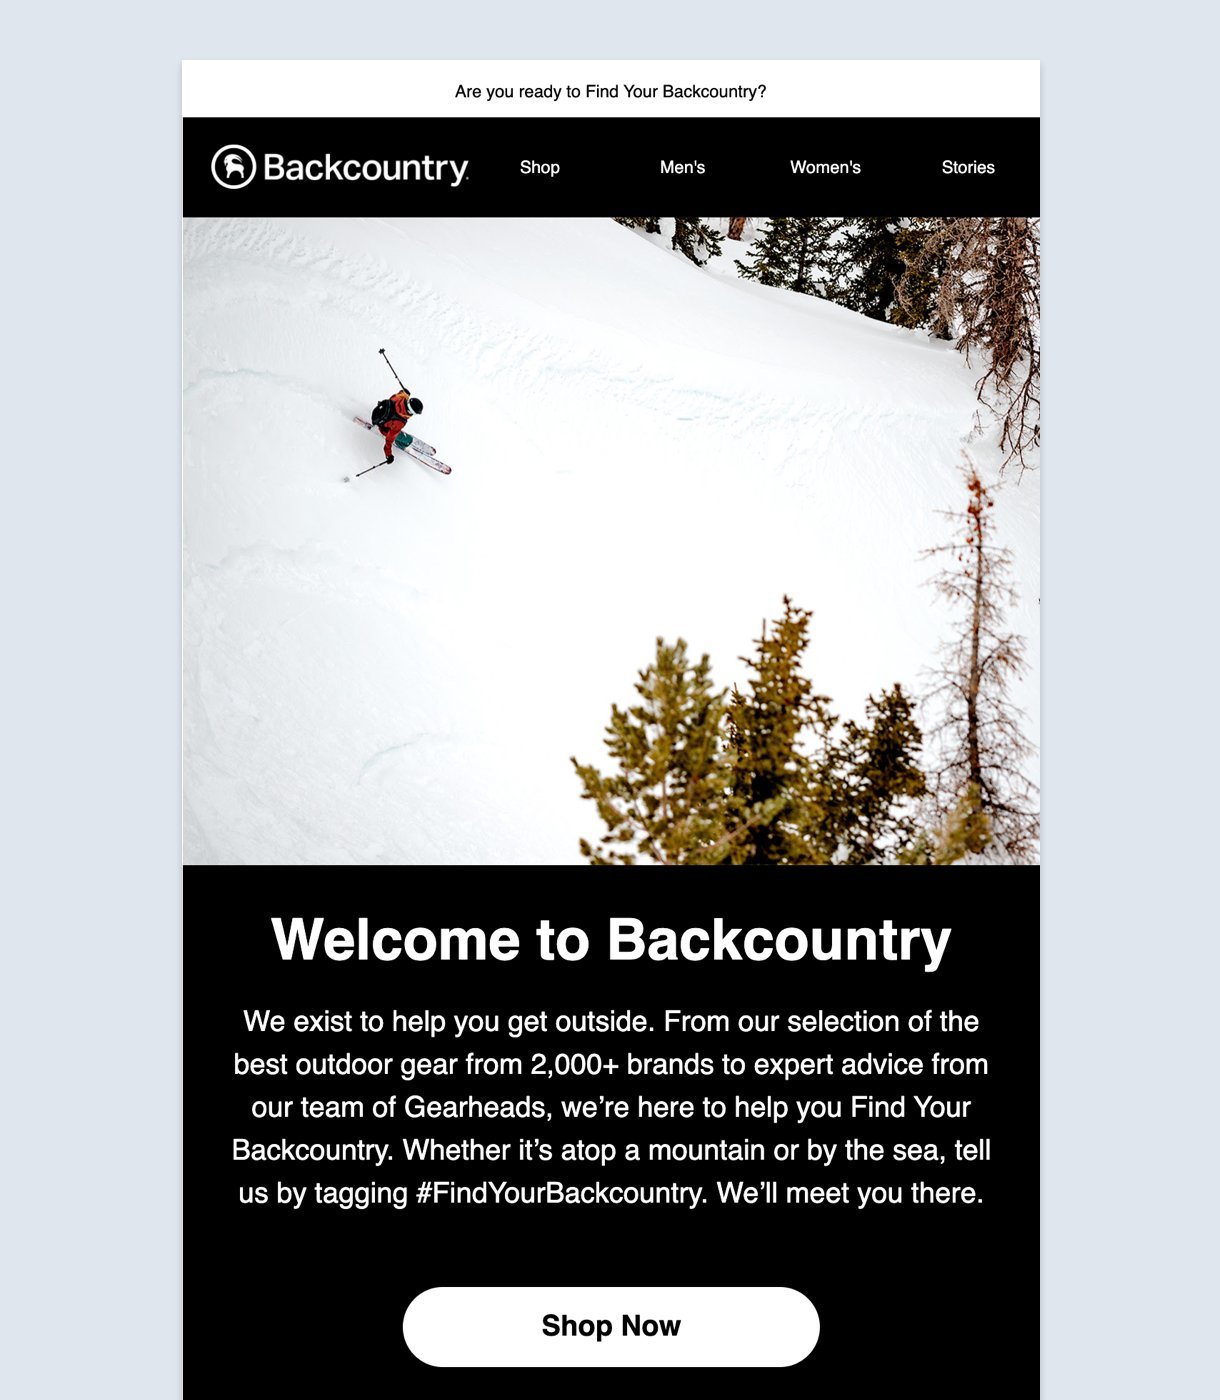 Te damos la bienvenida a Backcountry